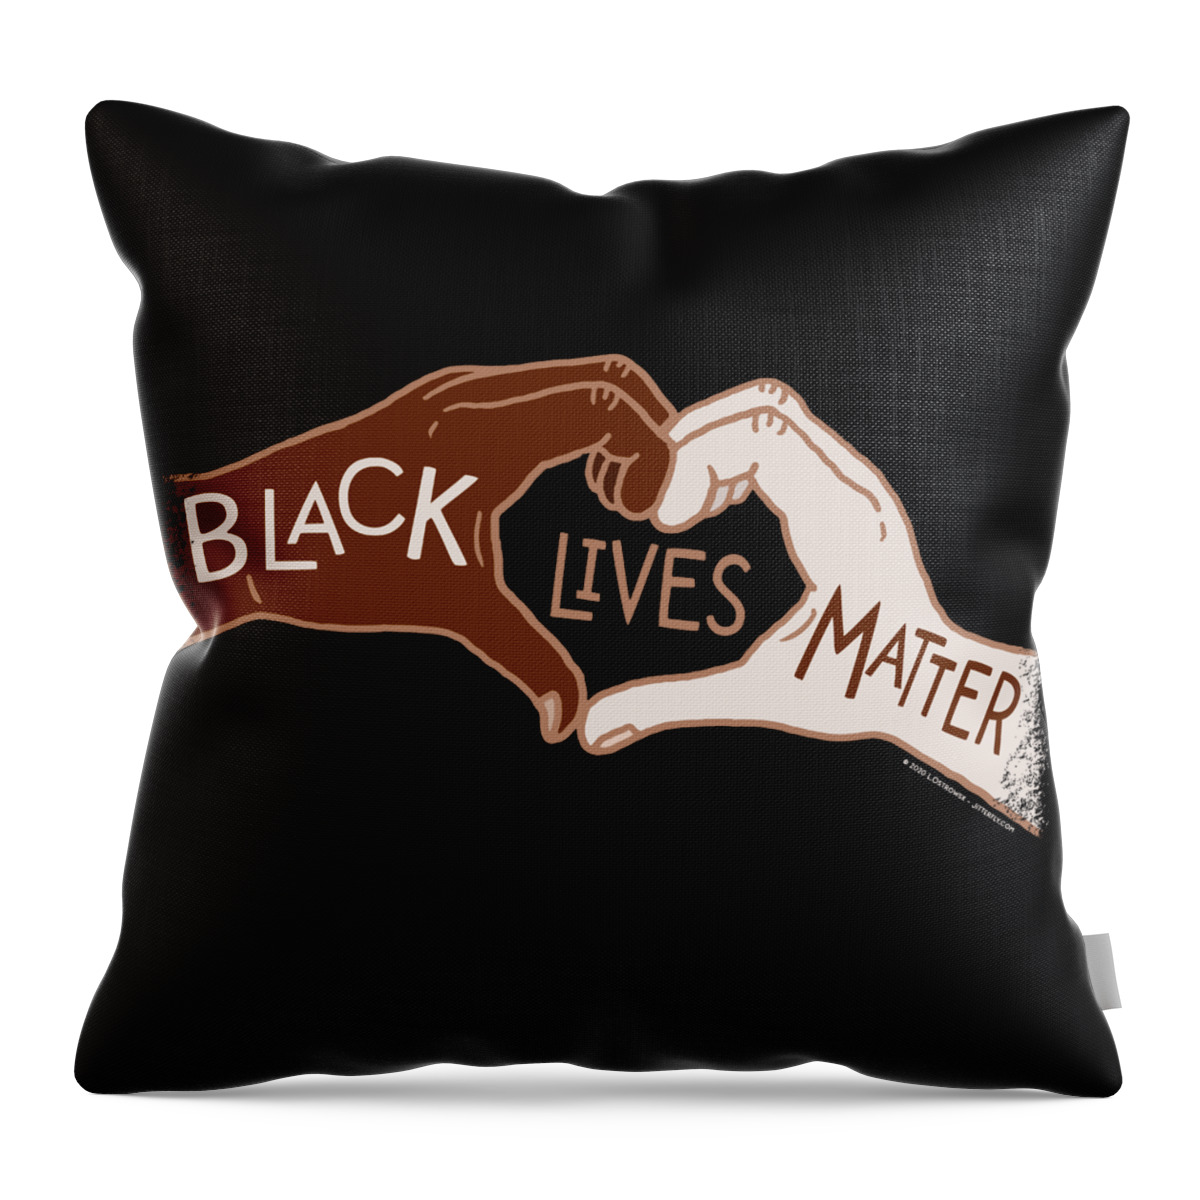 Black Lives Matter Throw Pillow featuring the digital art Black Lives Matters - Heart Hands by Laura Ostrowski